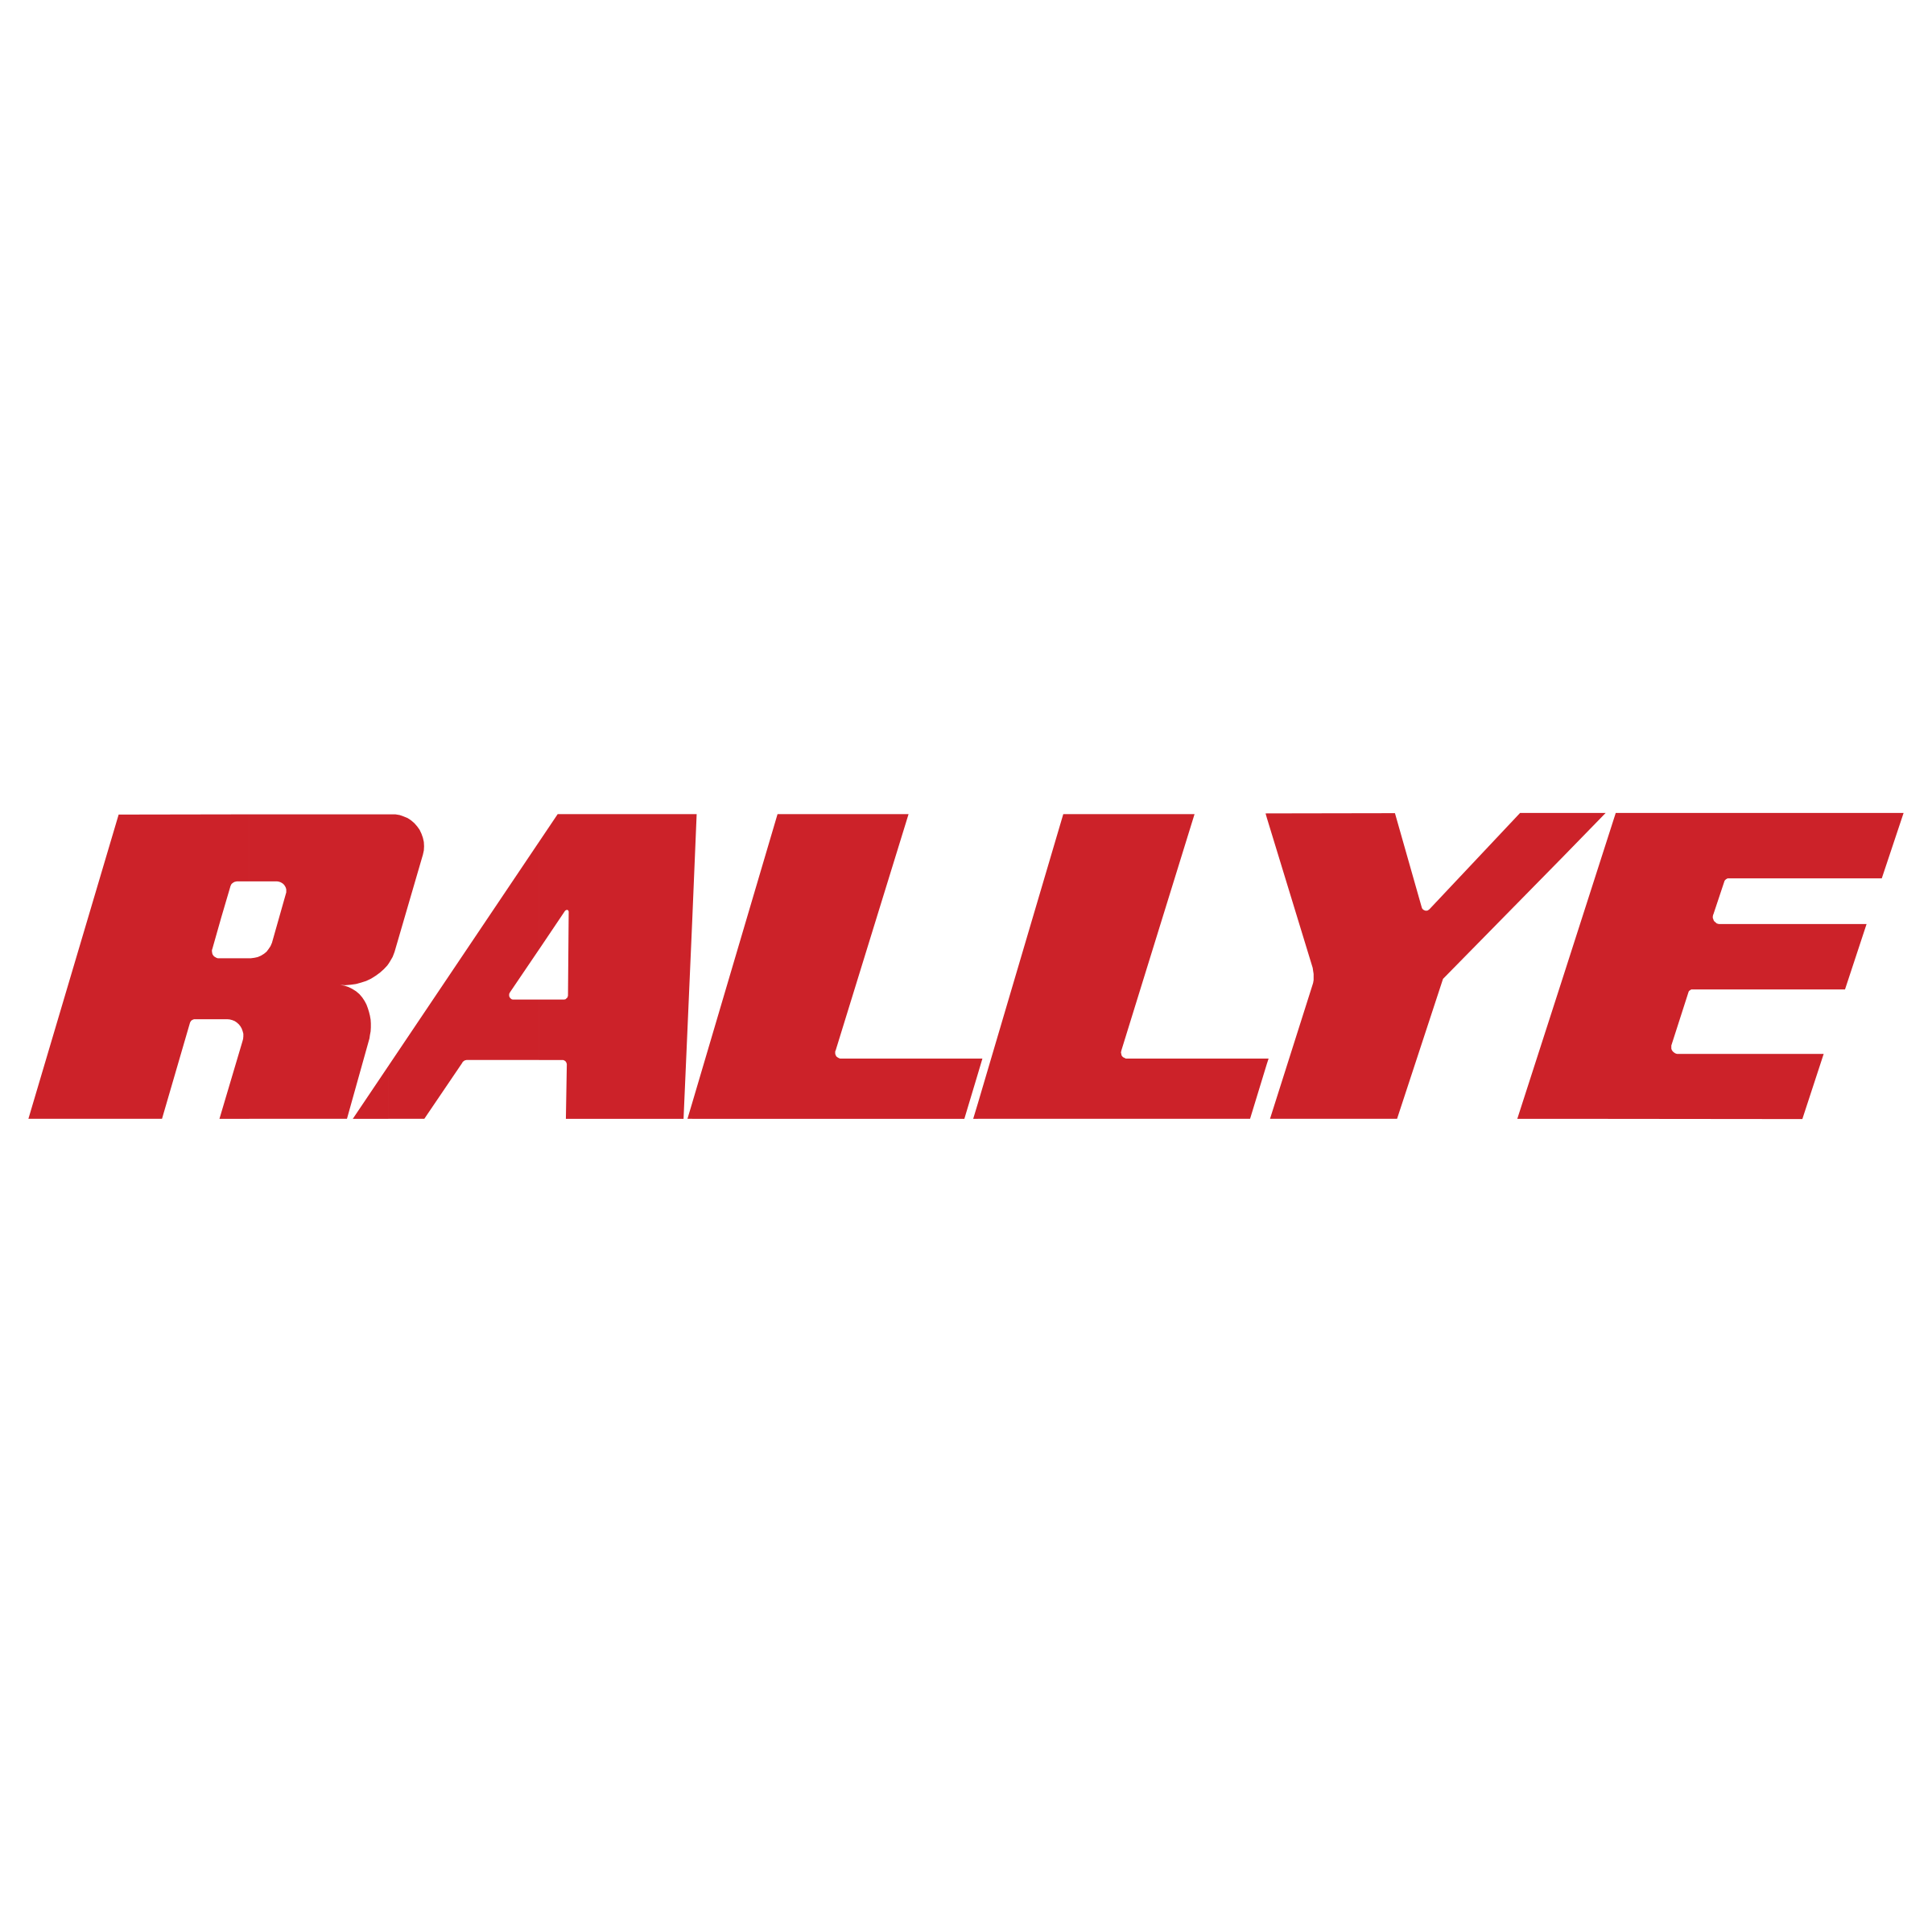 Rallye